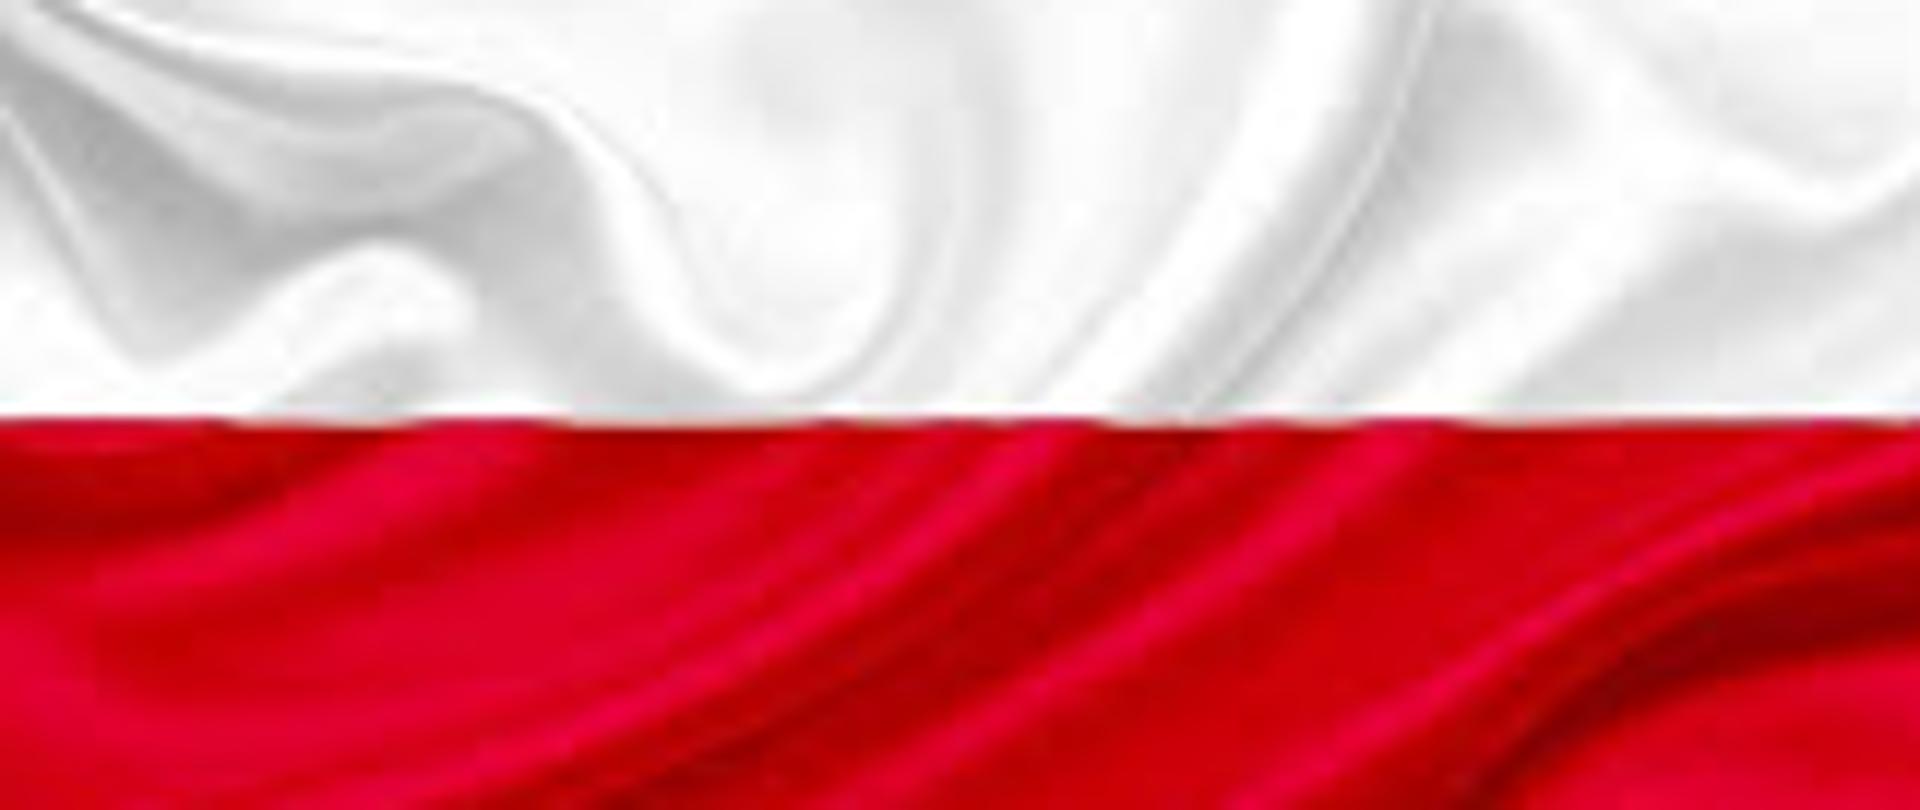 Zdjęcie flagi Polski w poziomie